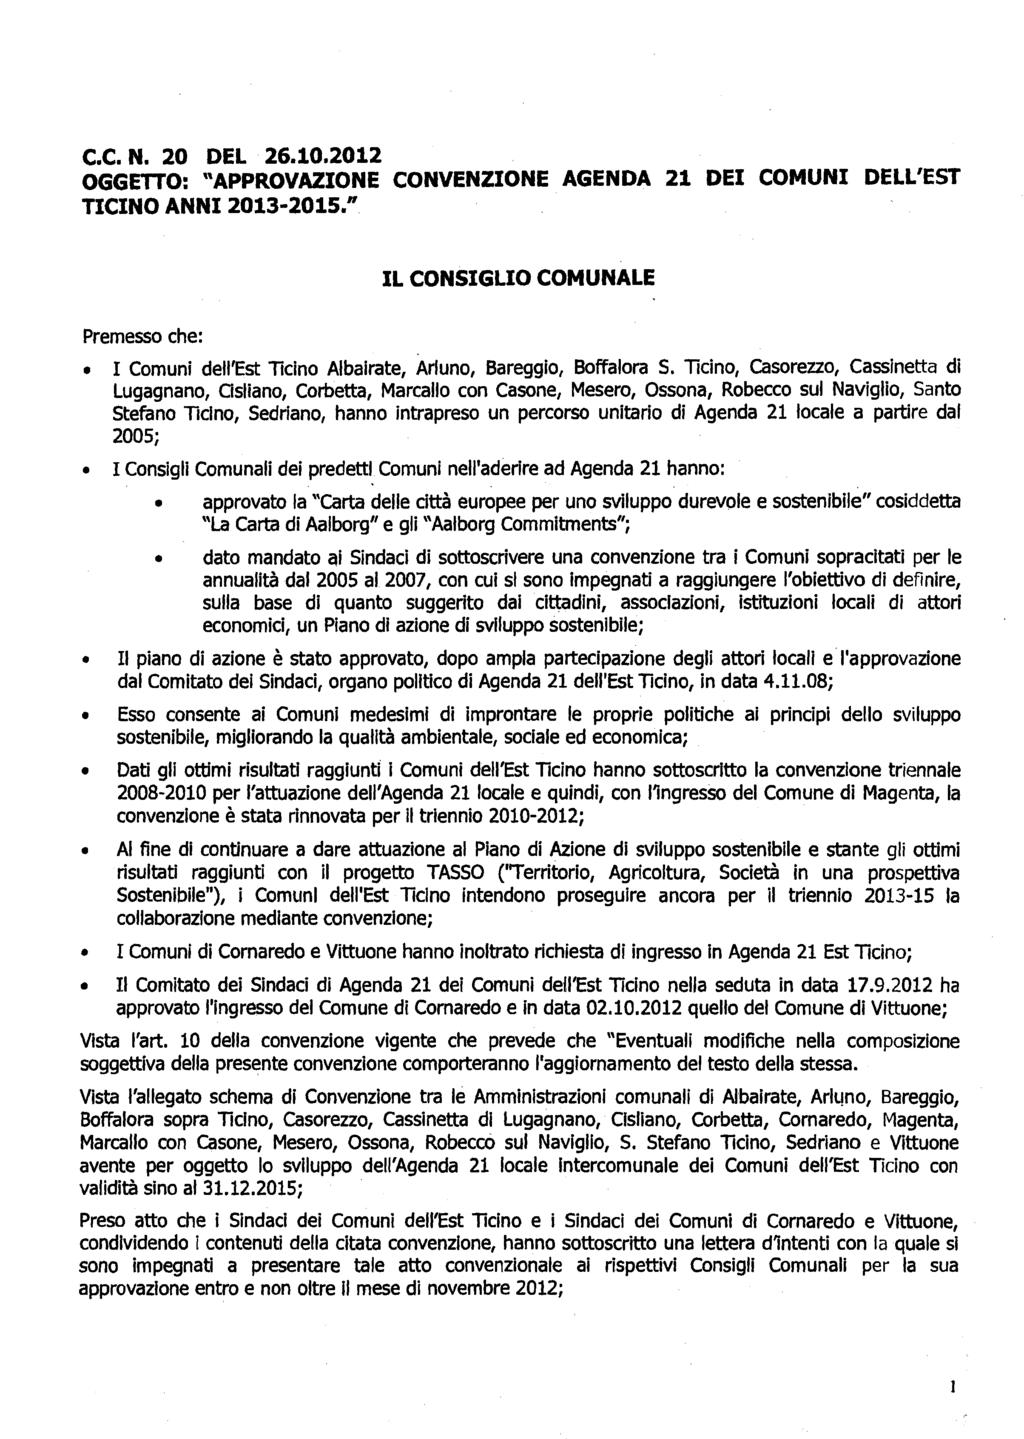 C.C. N. 20 DEL 26.10.2012 OGGETTO: "APPROVAZIONE CONVENZIONE AGENDA 21 DEI COMUNI DELL'EST TICINO ANNI 2013-2015.